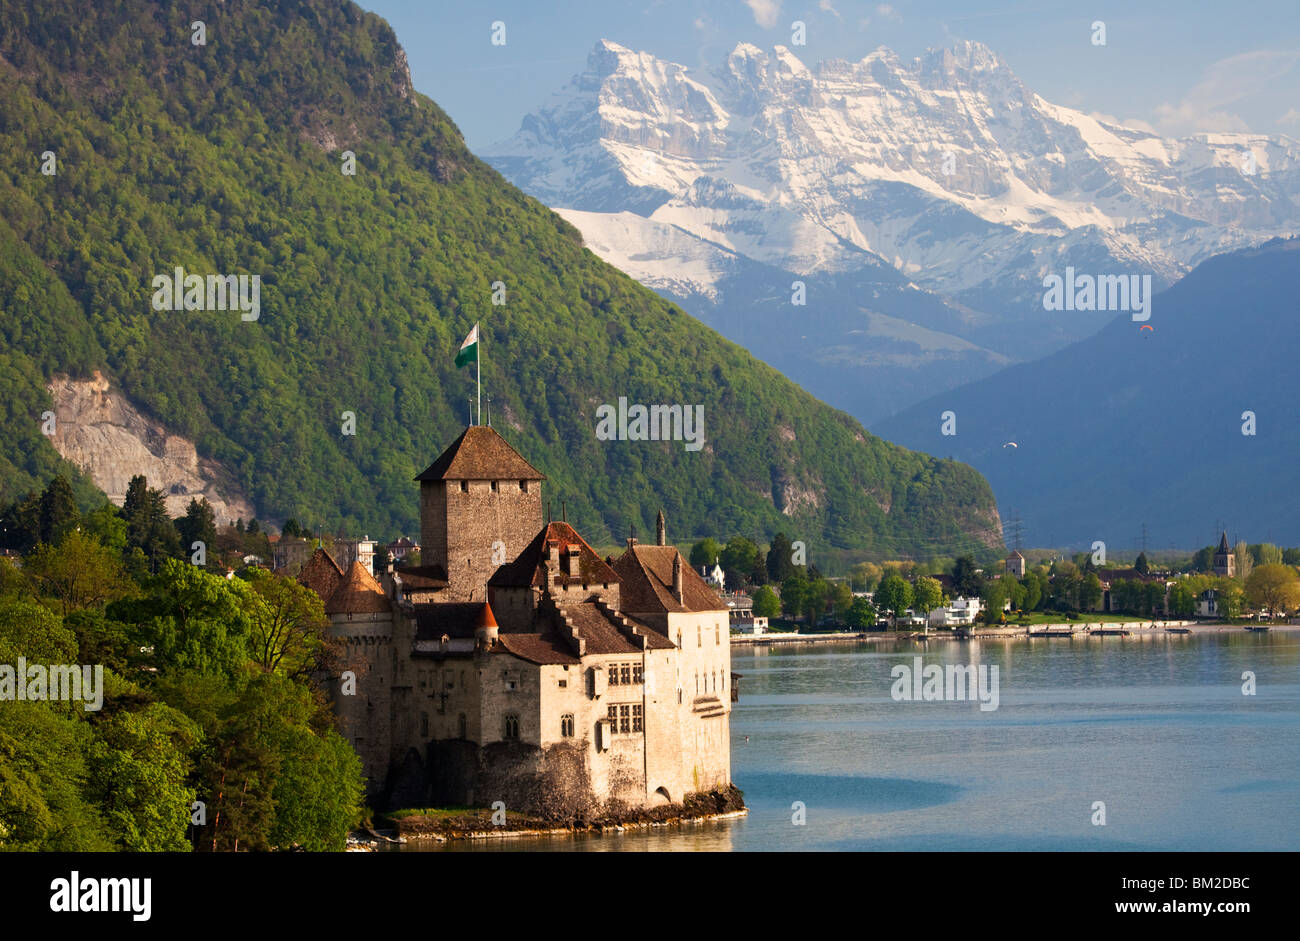 Chateau de Chillon, Switzerland Stock Photo